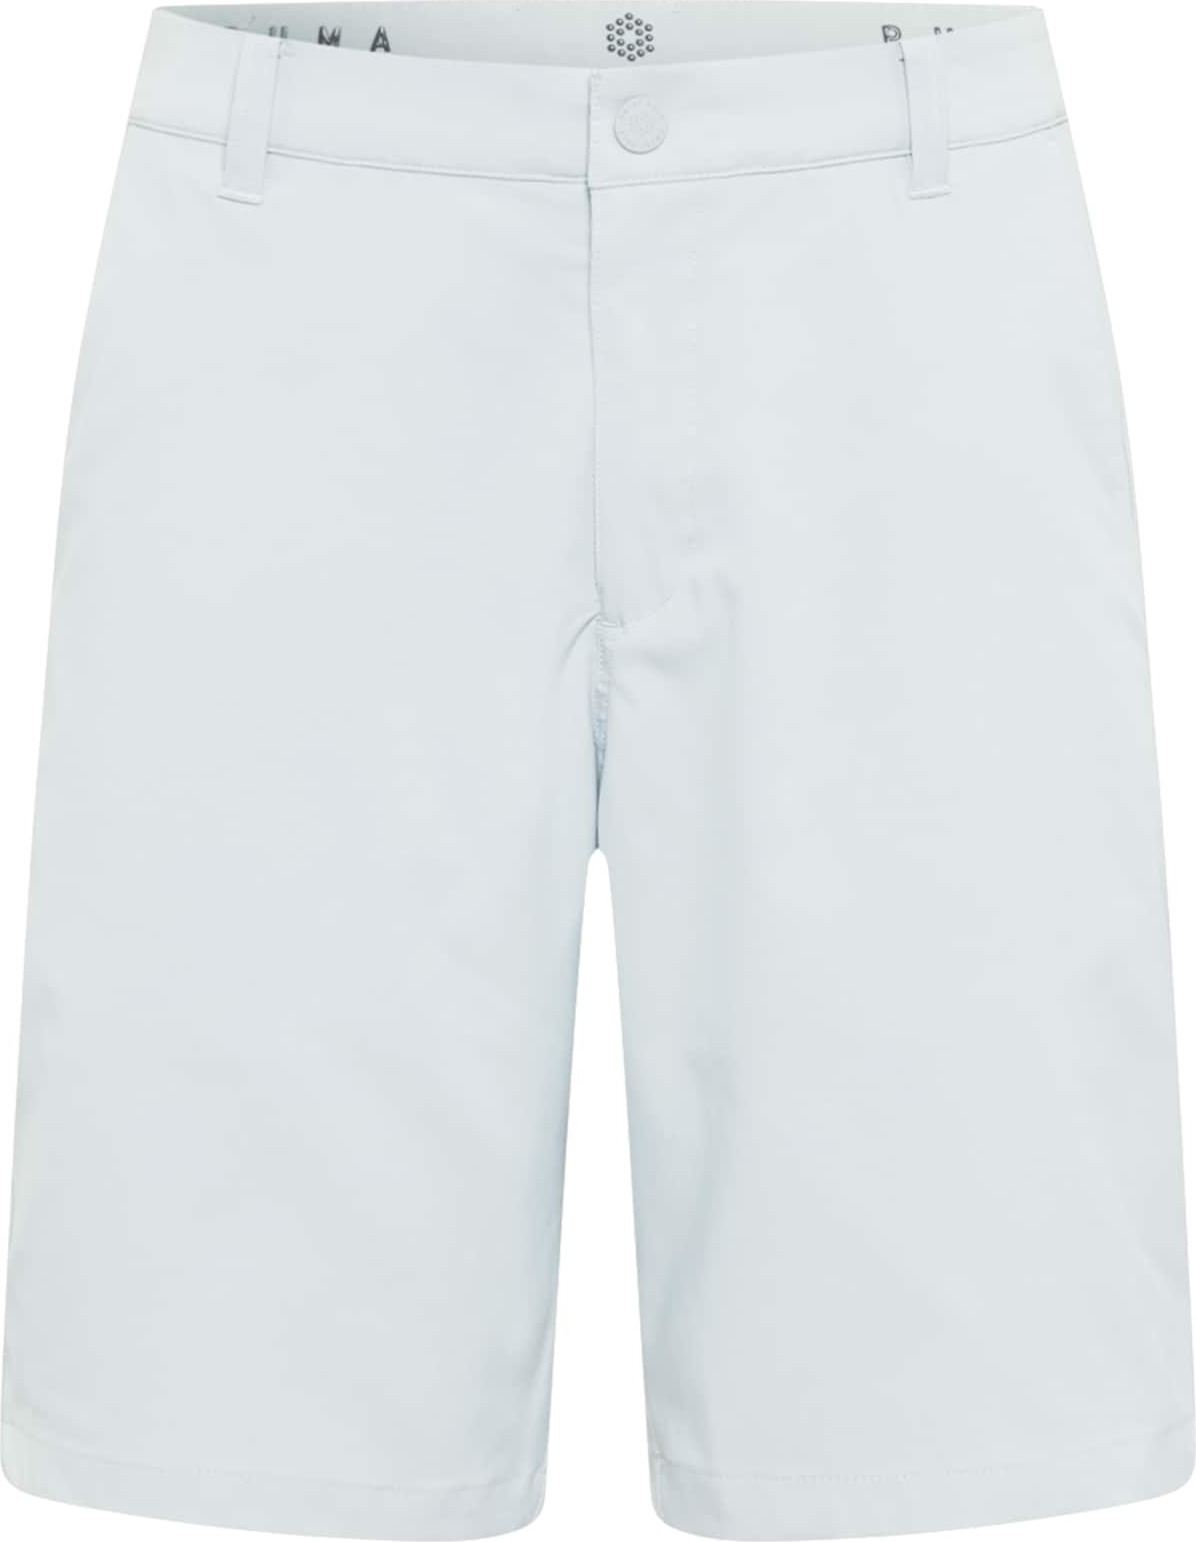 PUMA Chino kalhoty 'Jackpot' světle šedá